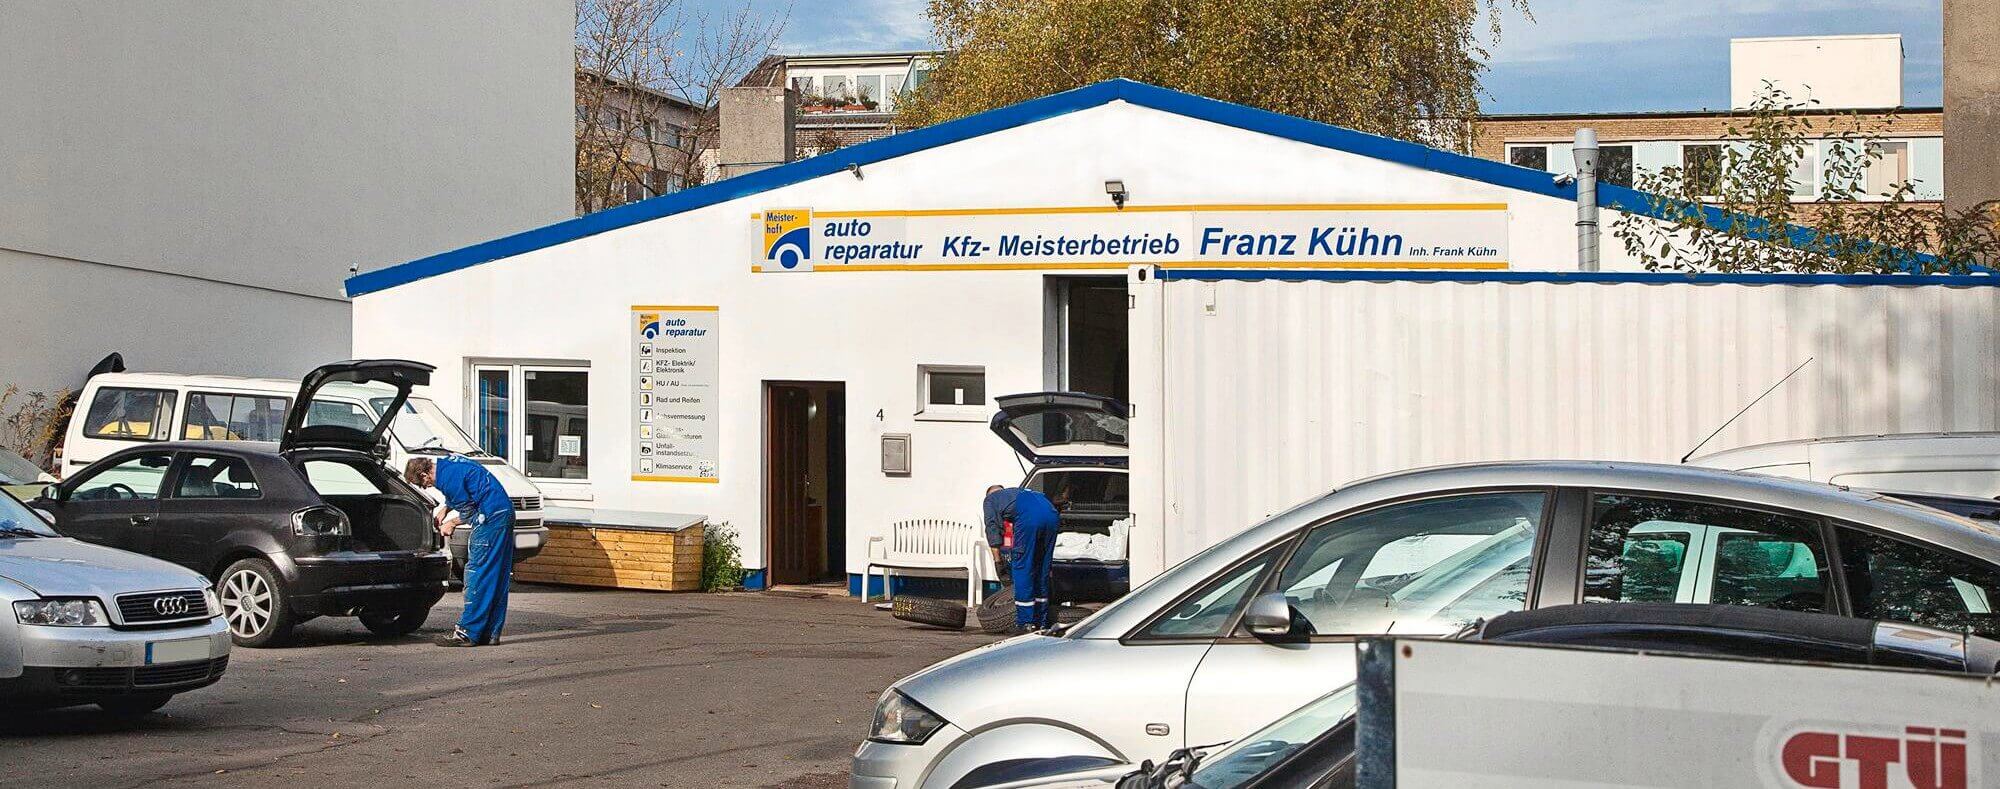 Kfz-Kuehn-Mehrmarkenwerkstatt